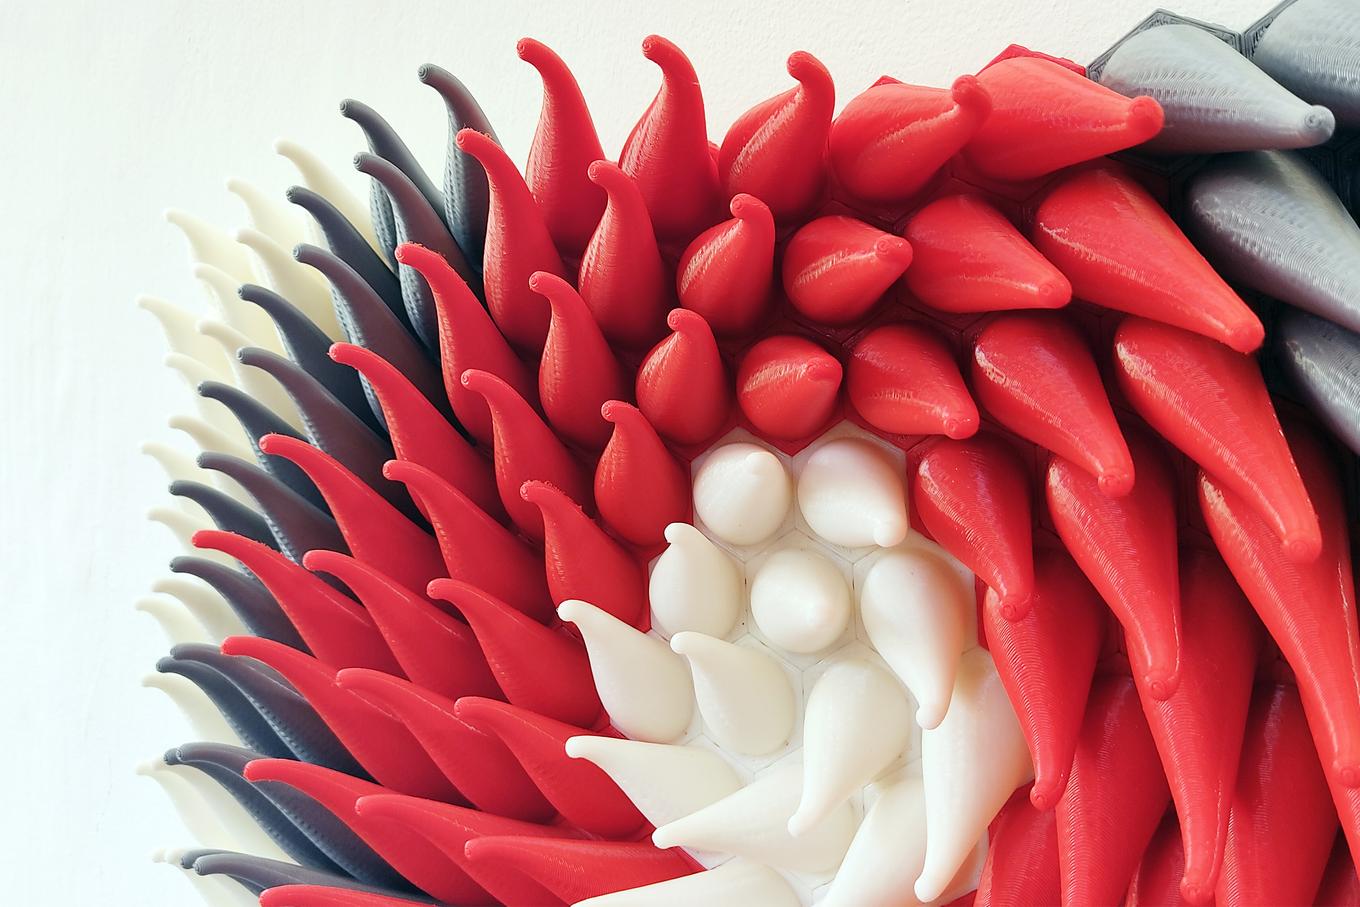 Twisted Tentacles | Herschel Shapiro | Modern Parametric Wall Sculpture